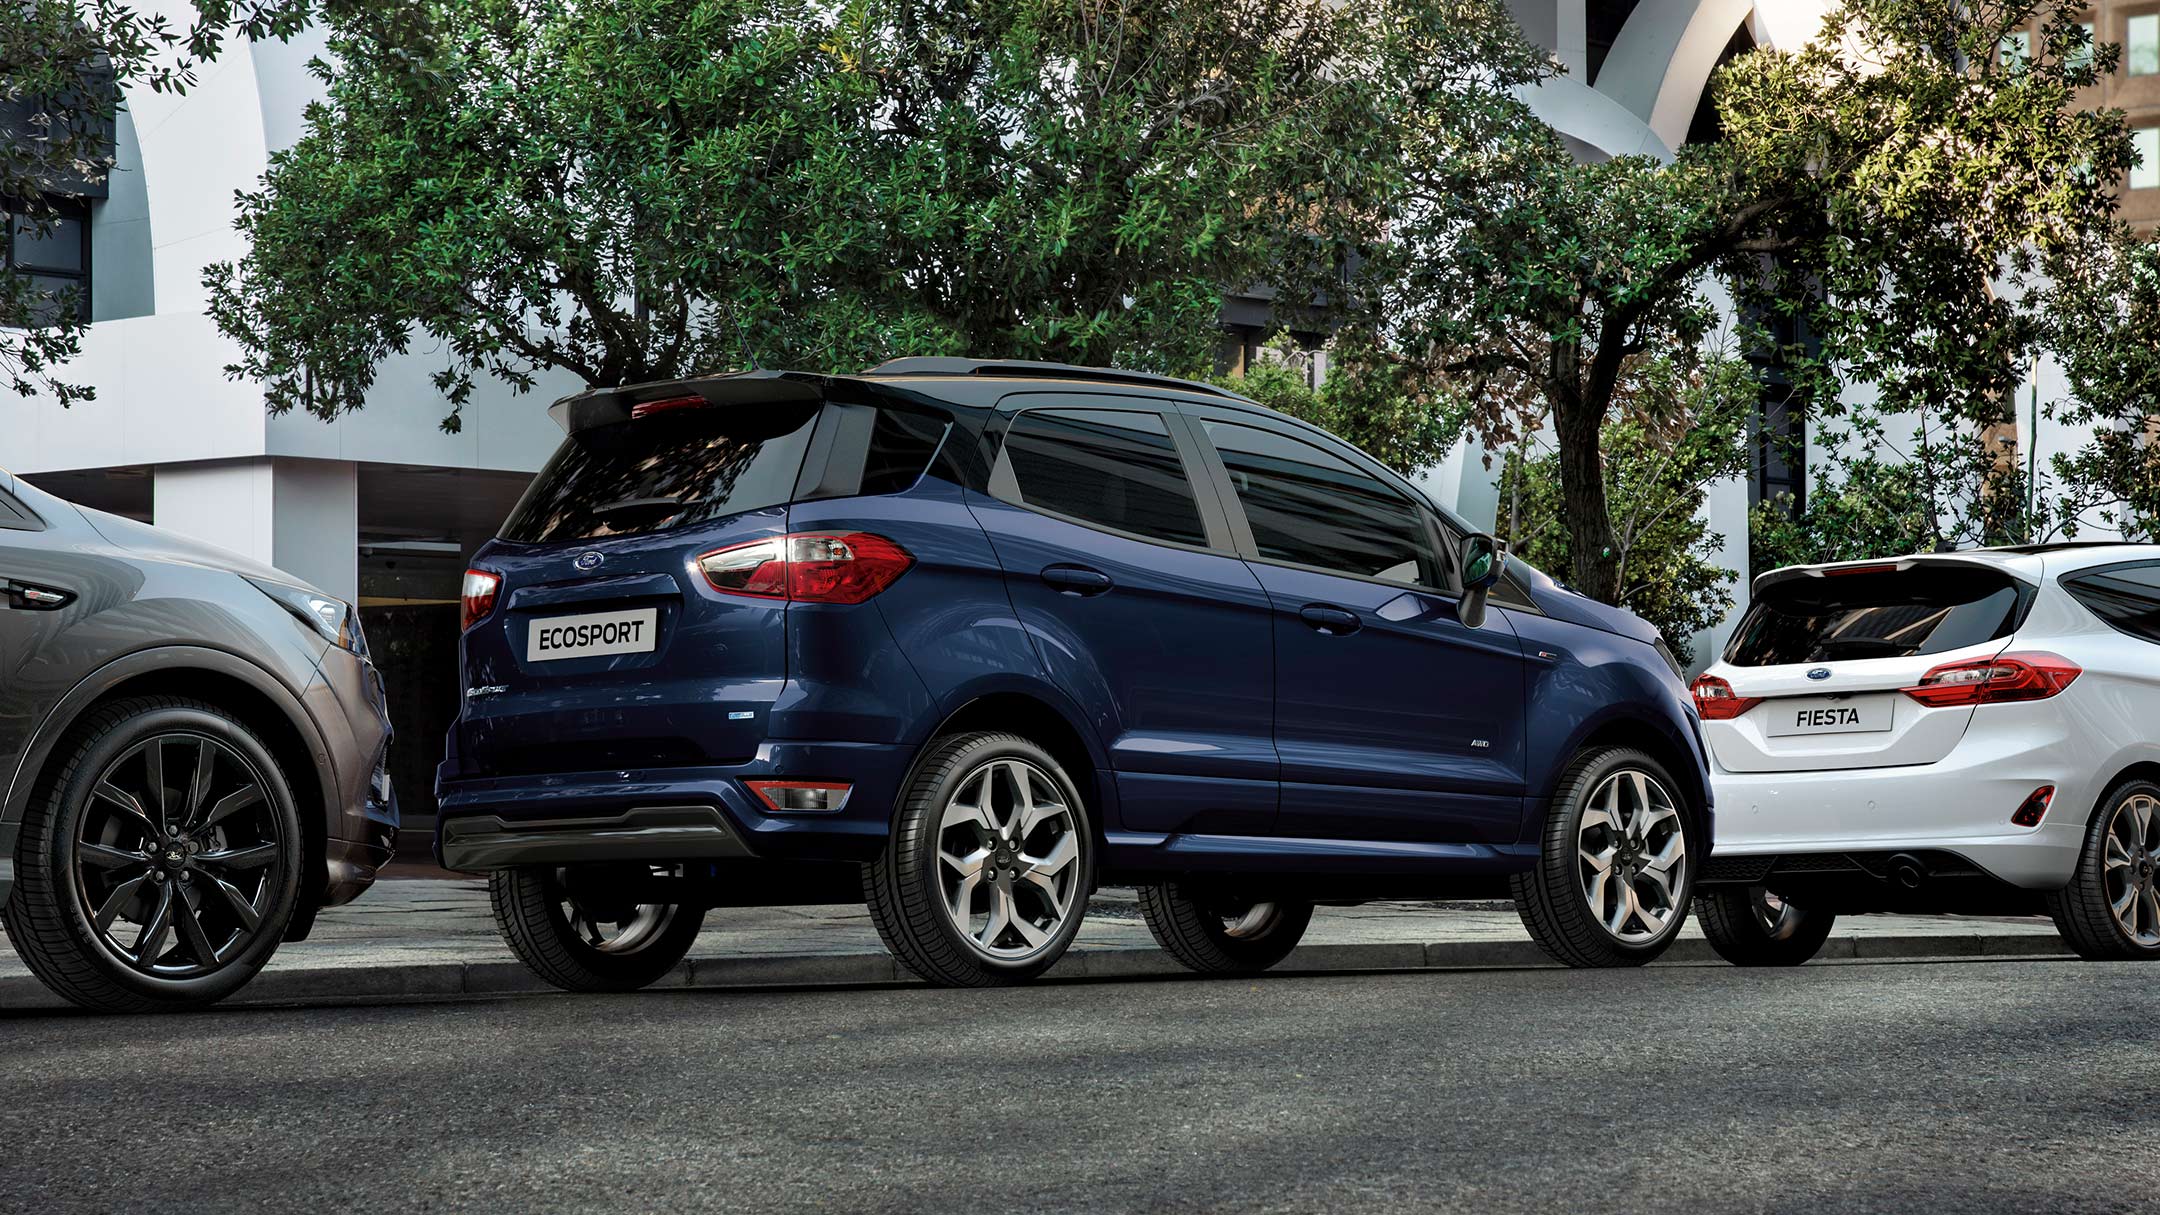 Ford Ecosport in Blau. Dreiviertelansicht von hinten. Parkend in einer Stadt